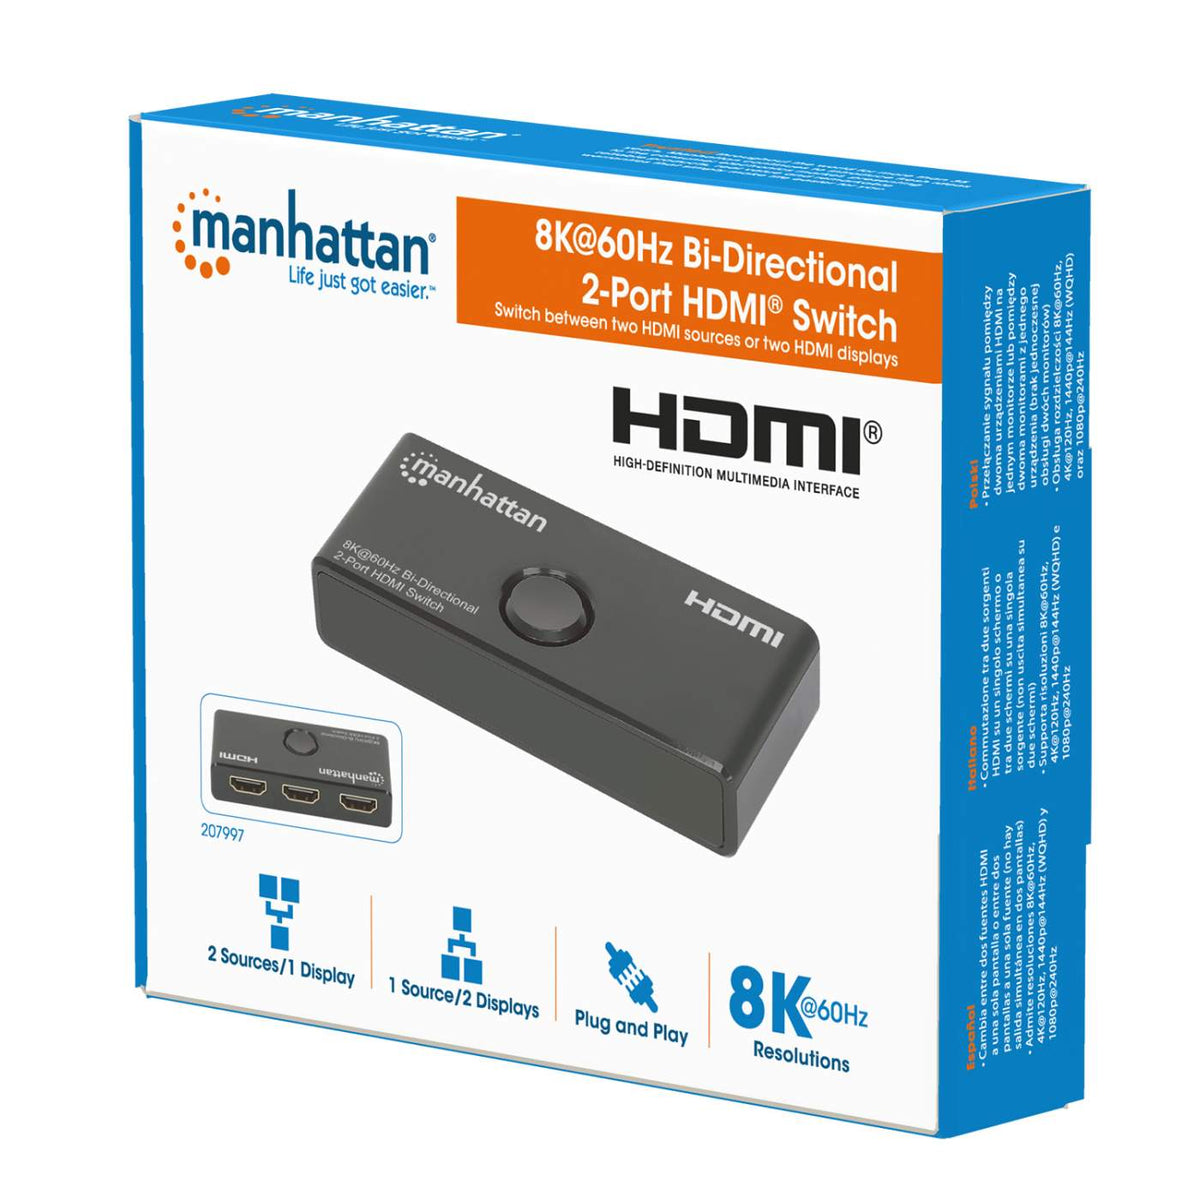 Manhattan 8K@60Hz Bi-Directional 2-Port HDMI Switch (207997)